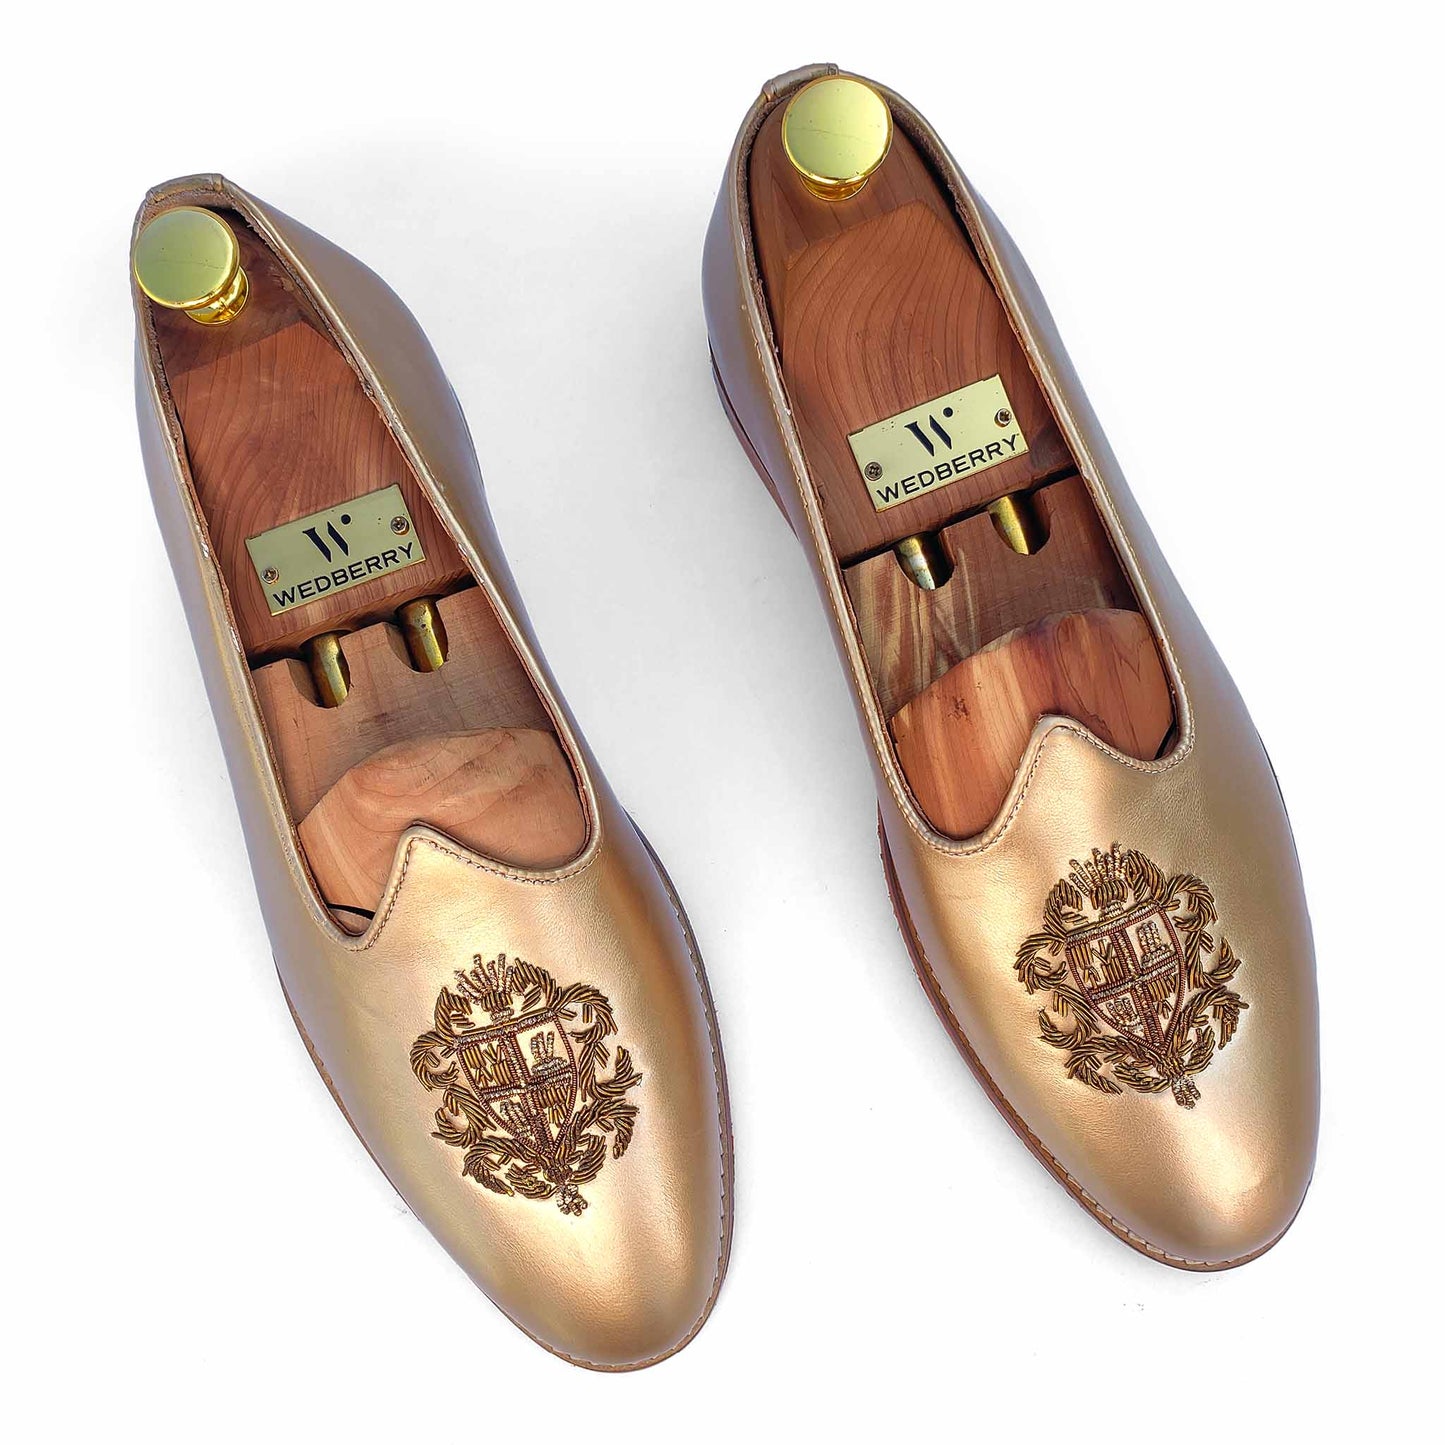 Light Gold Zardozi Handwork Wedding Shoes Ethnic Loafers Mojri for Men